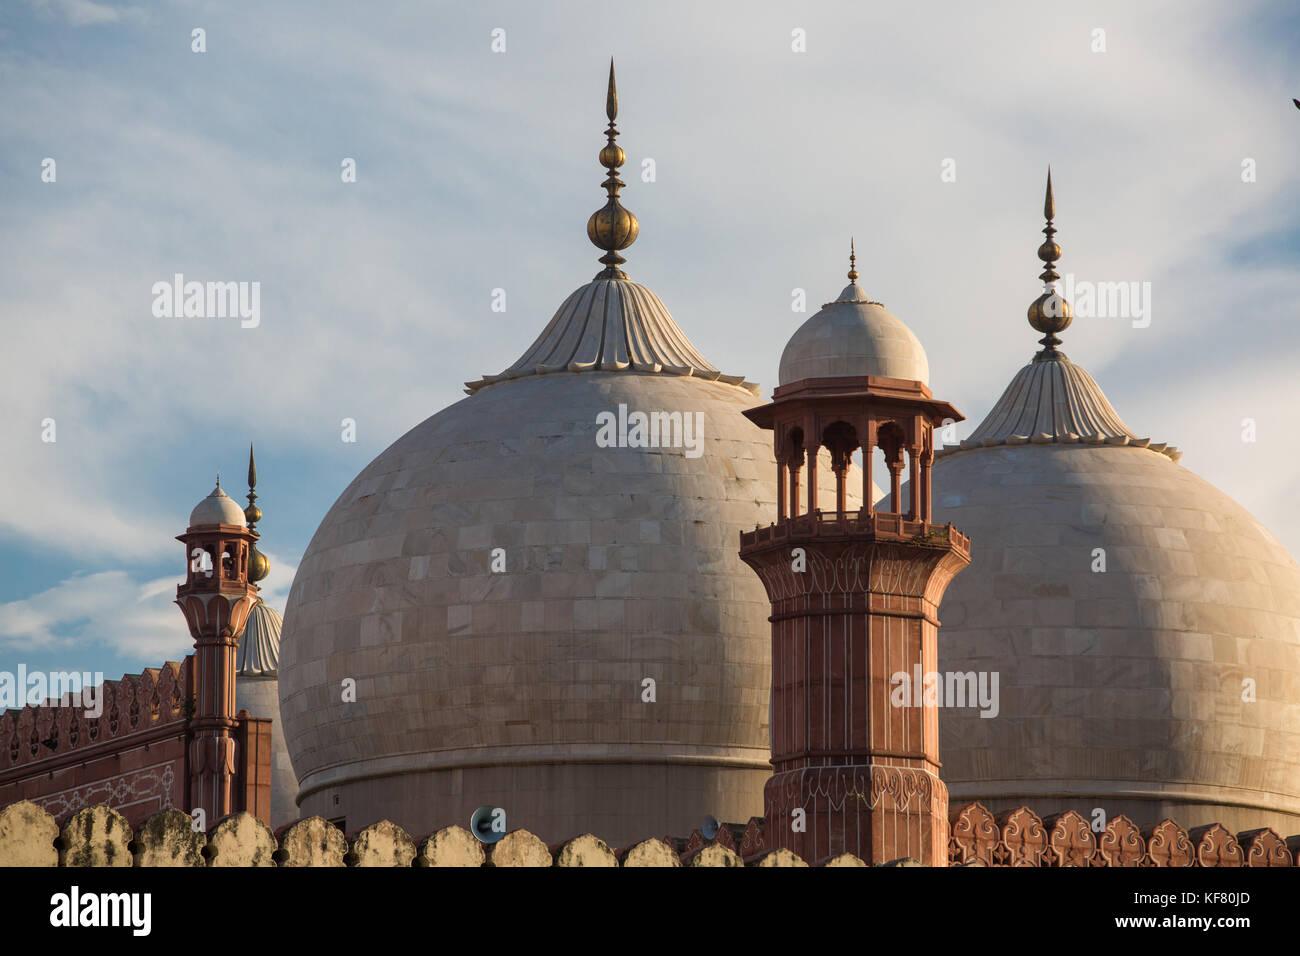 La mosquée de l'empereur - mosquée Badshahi à Lahore, Pakistan, minarets closeup Banque D'Images